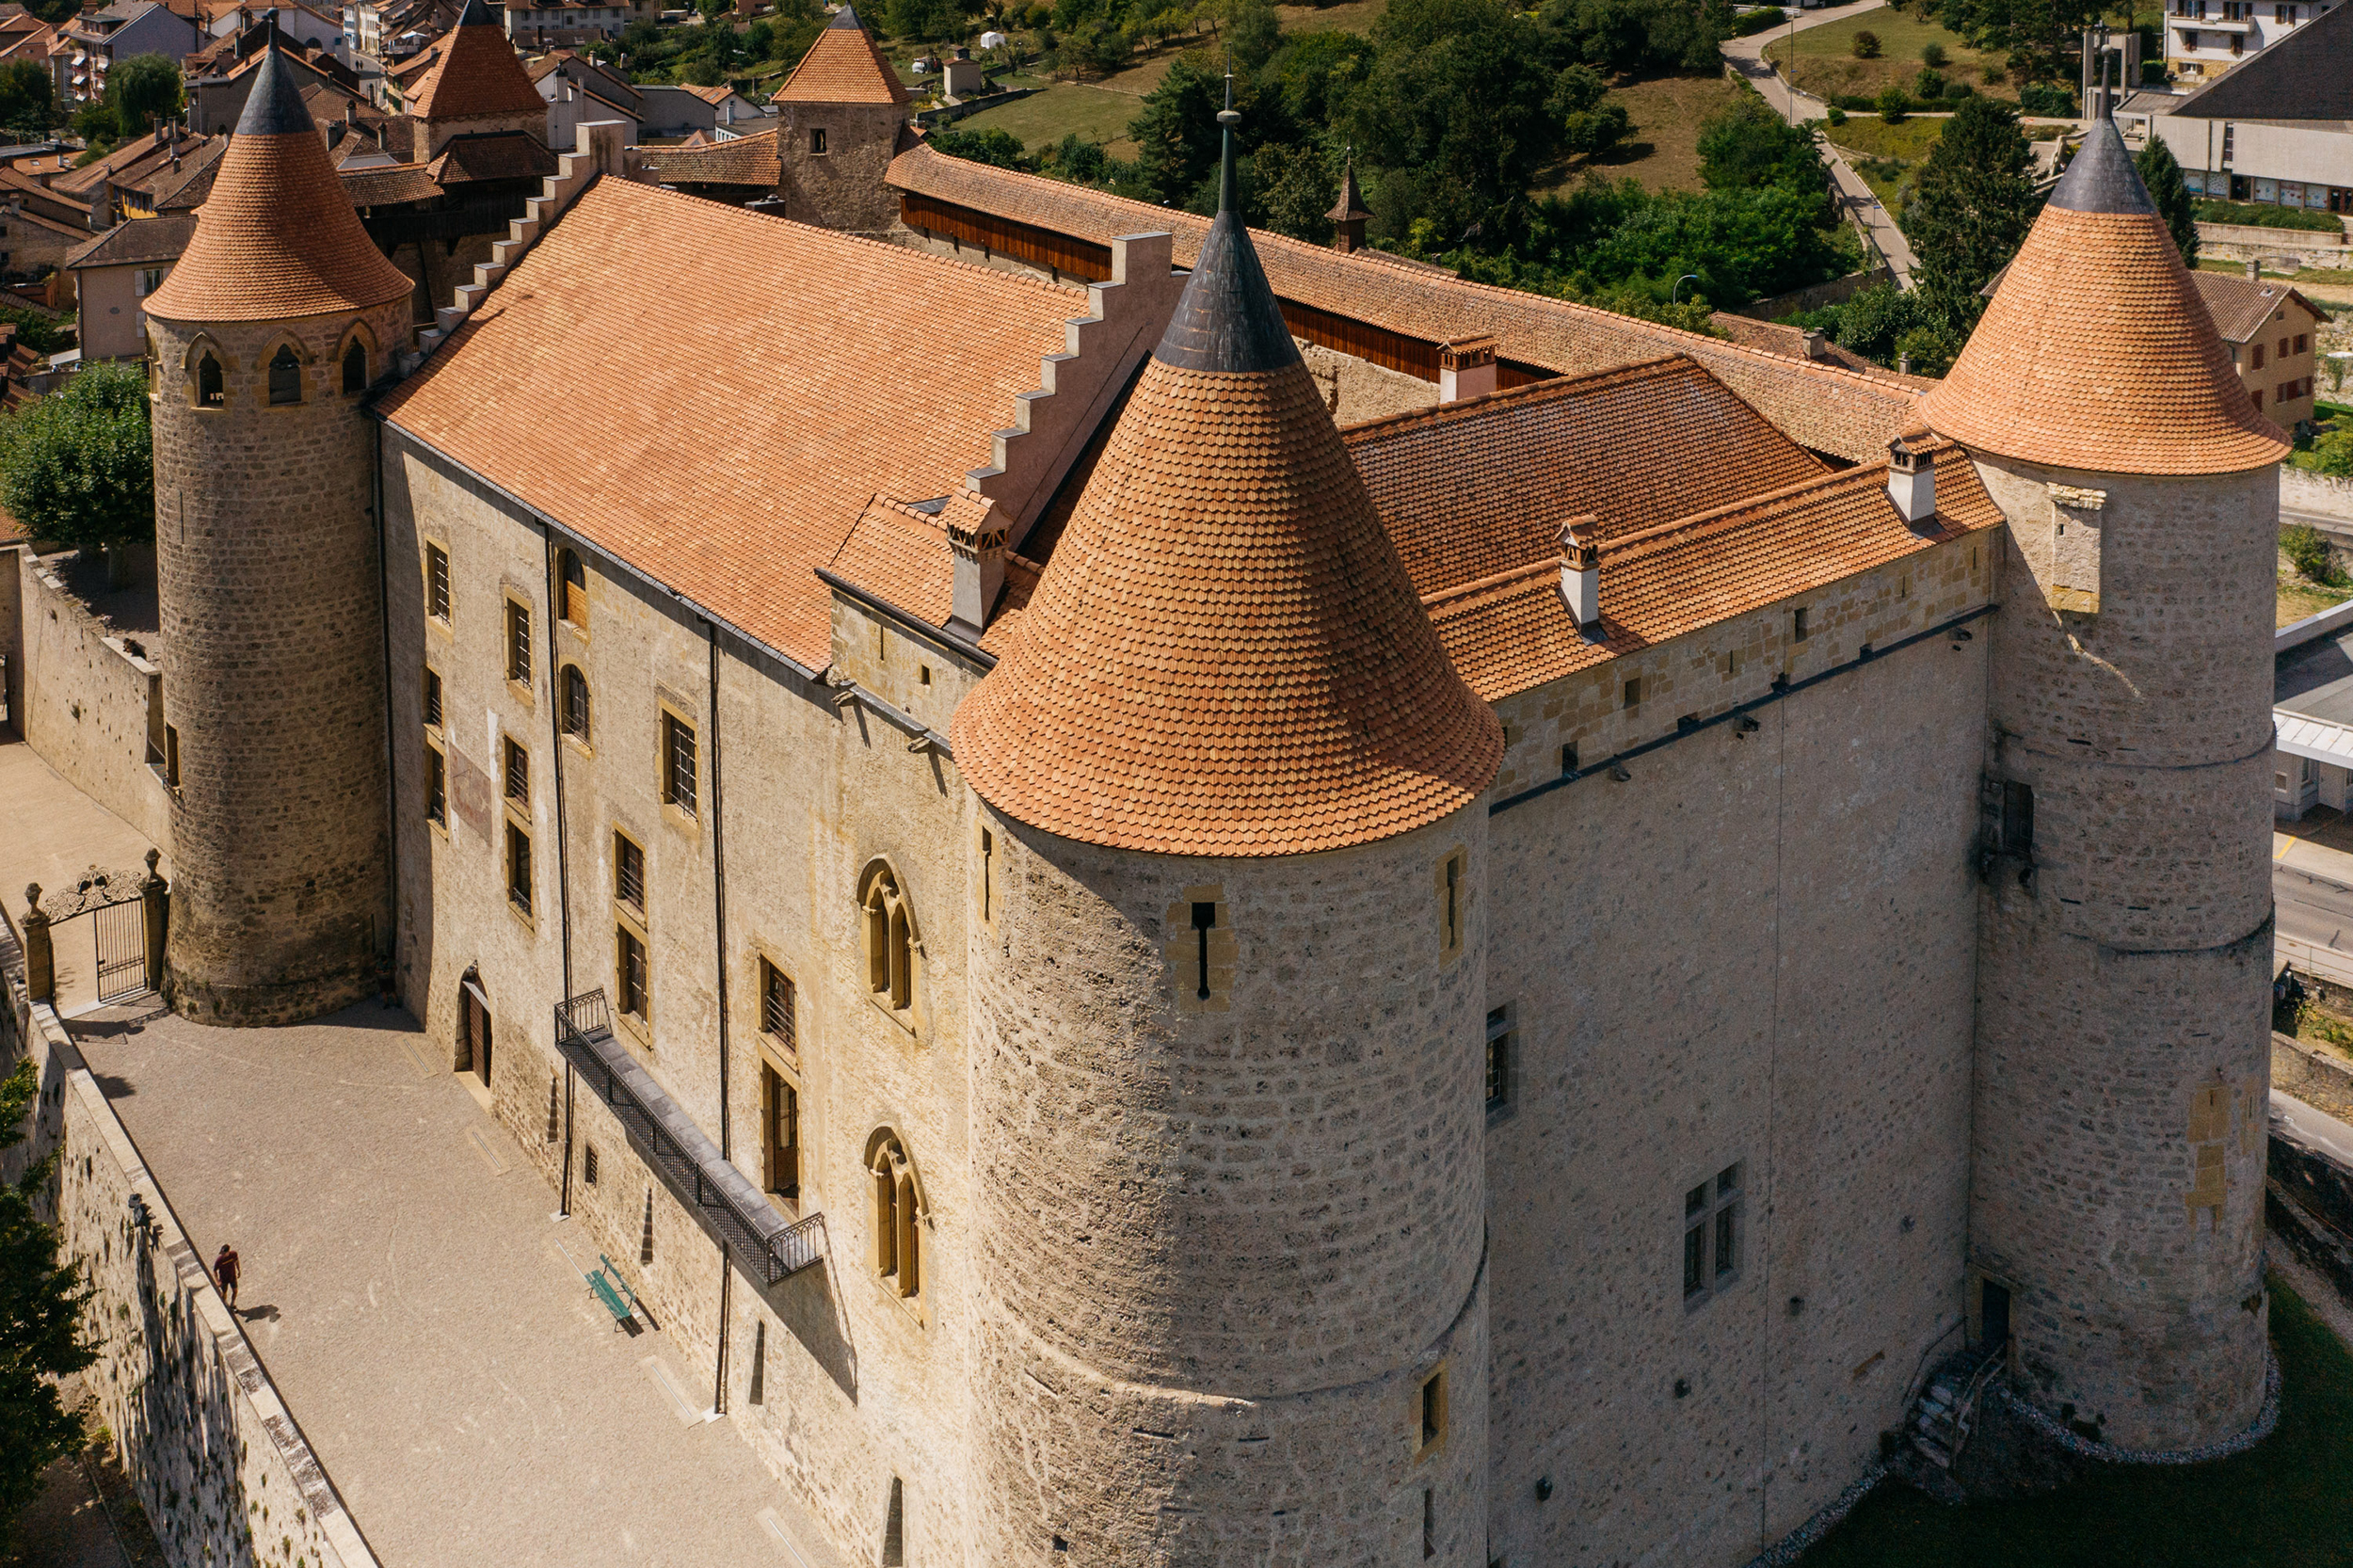 Erleben Sie den mittelalterlichen Charme von Schloss Grandson während seiner Renovierung